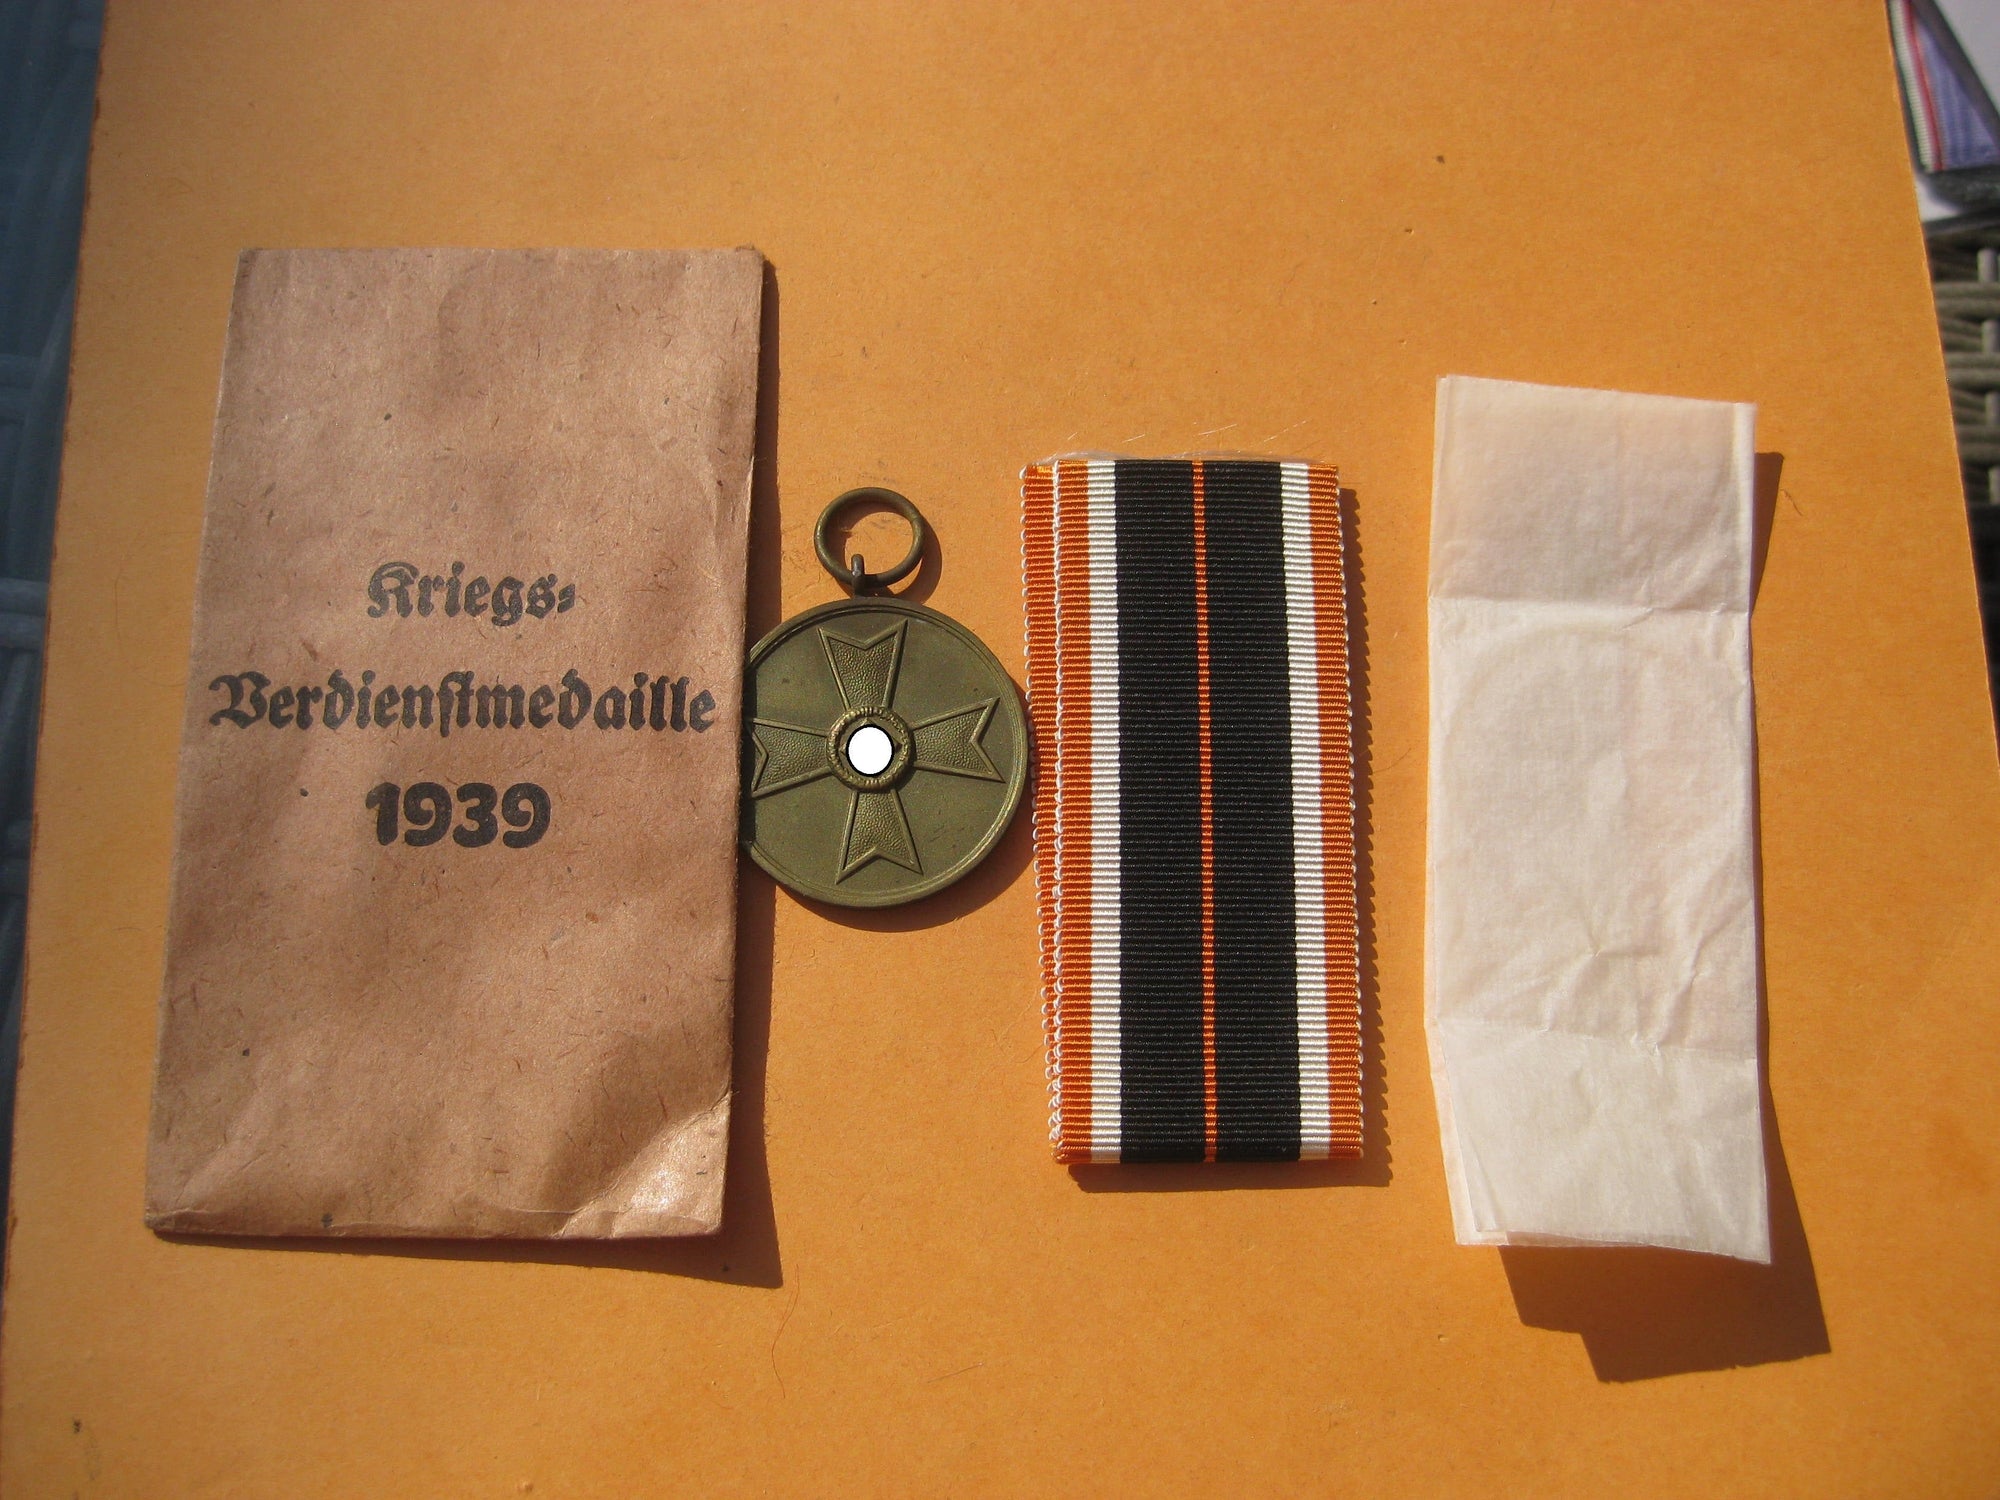 H.W. Medaille zum Kriegsverdienstkreuz 1939 in Verleihungstüte MINT CONDITION